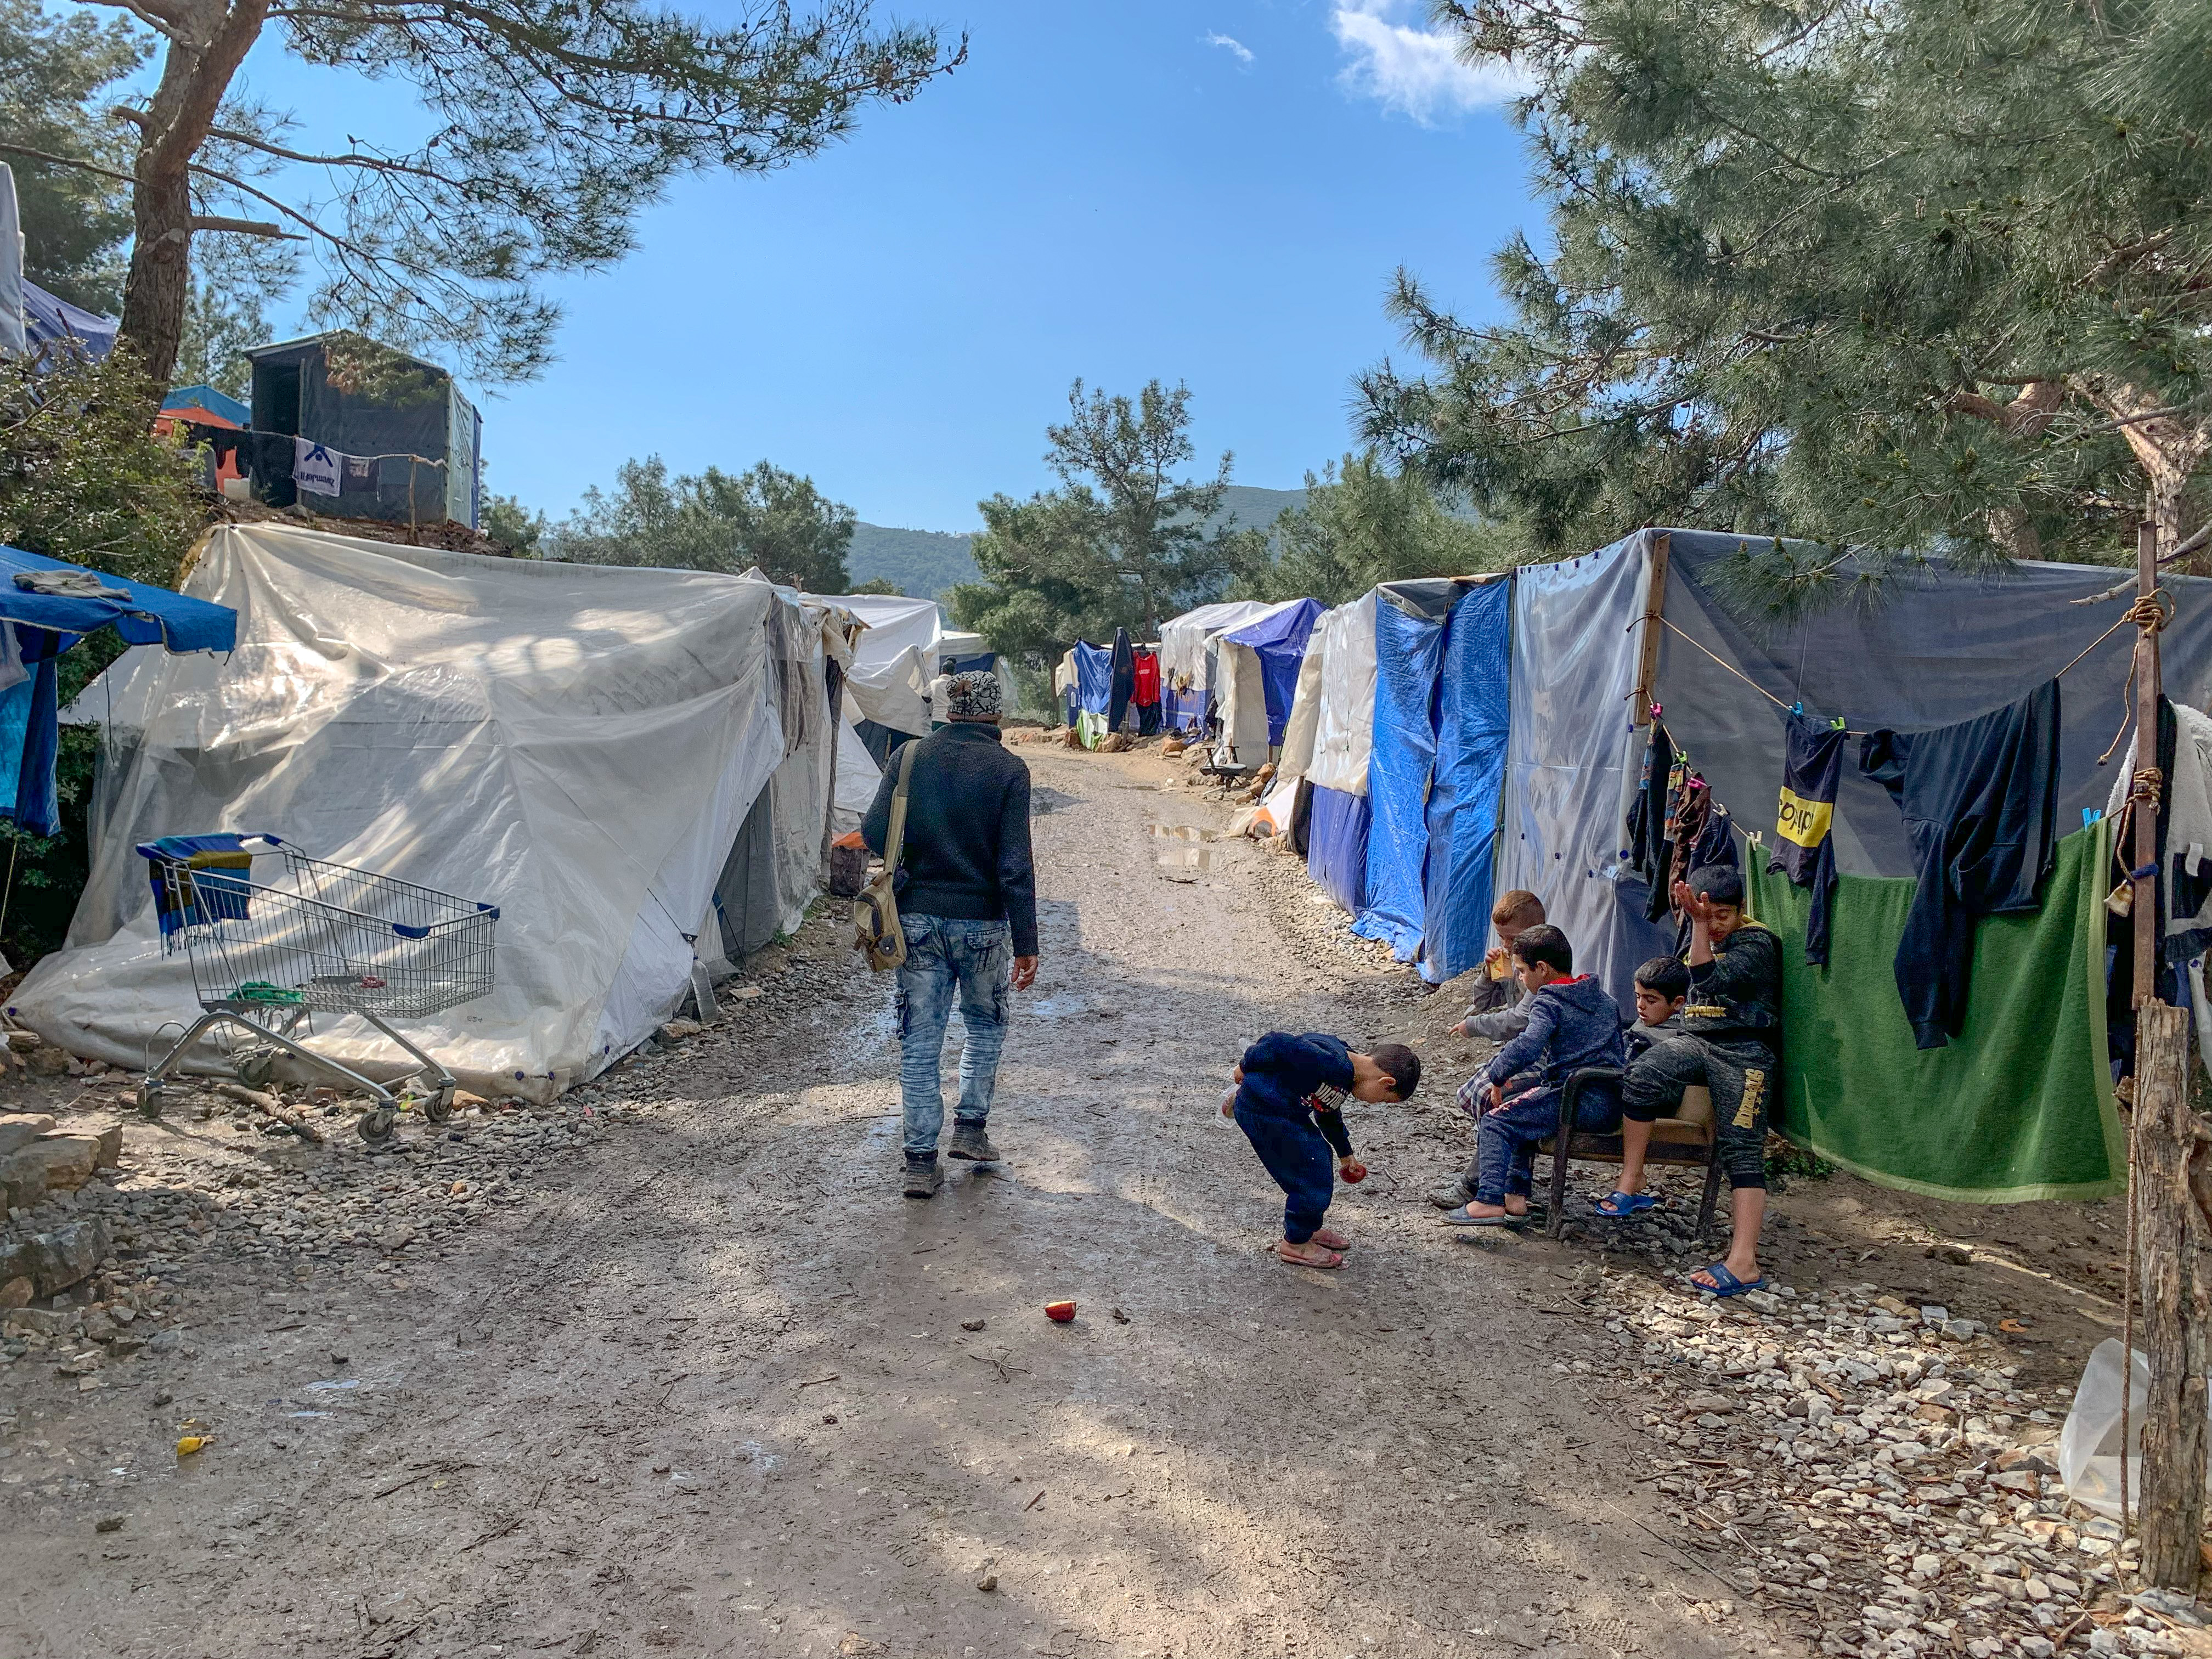 Trudna sytuacja uchodźców w obozach na greckich wyspach - Caritas Polska